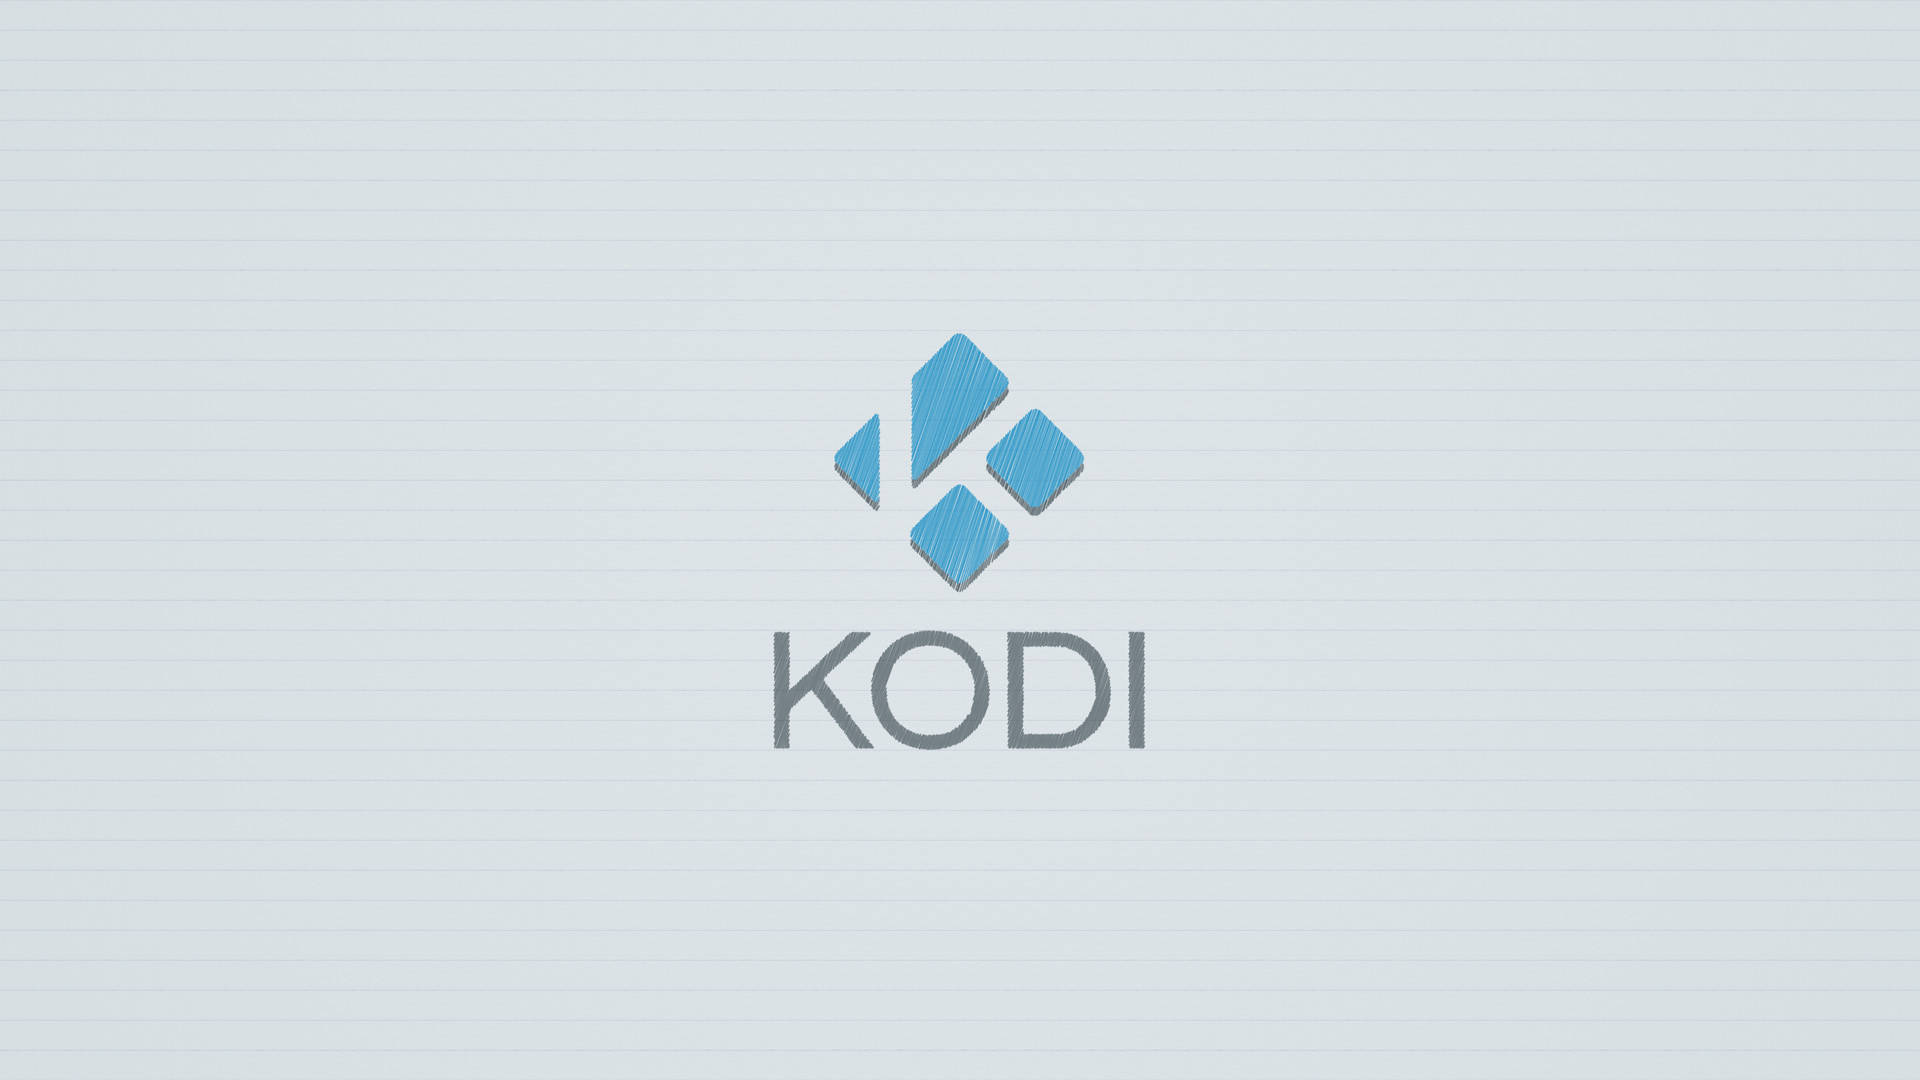 Kodi Logo On White Background Background